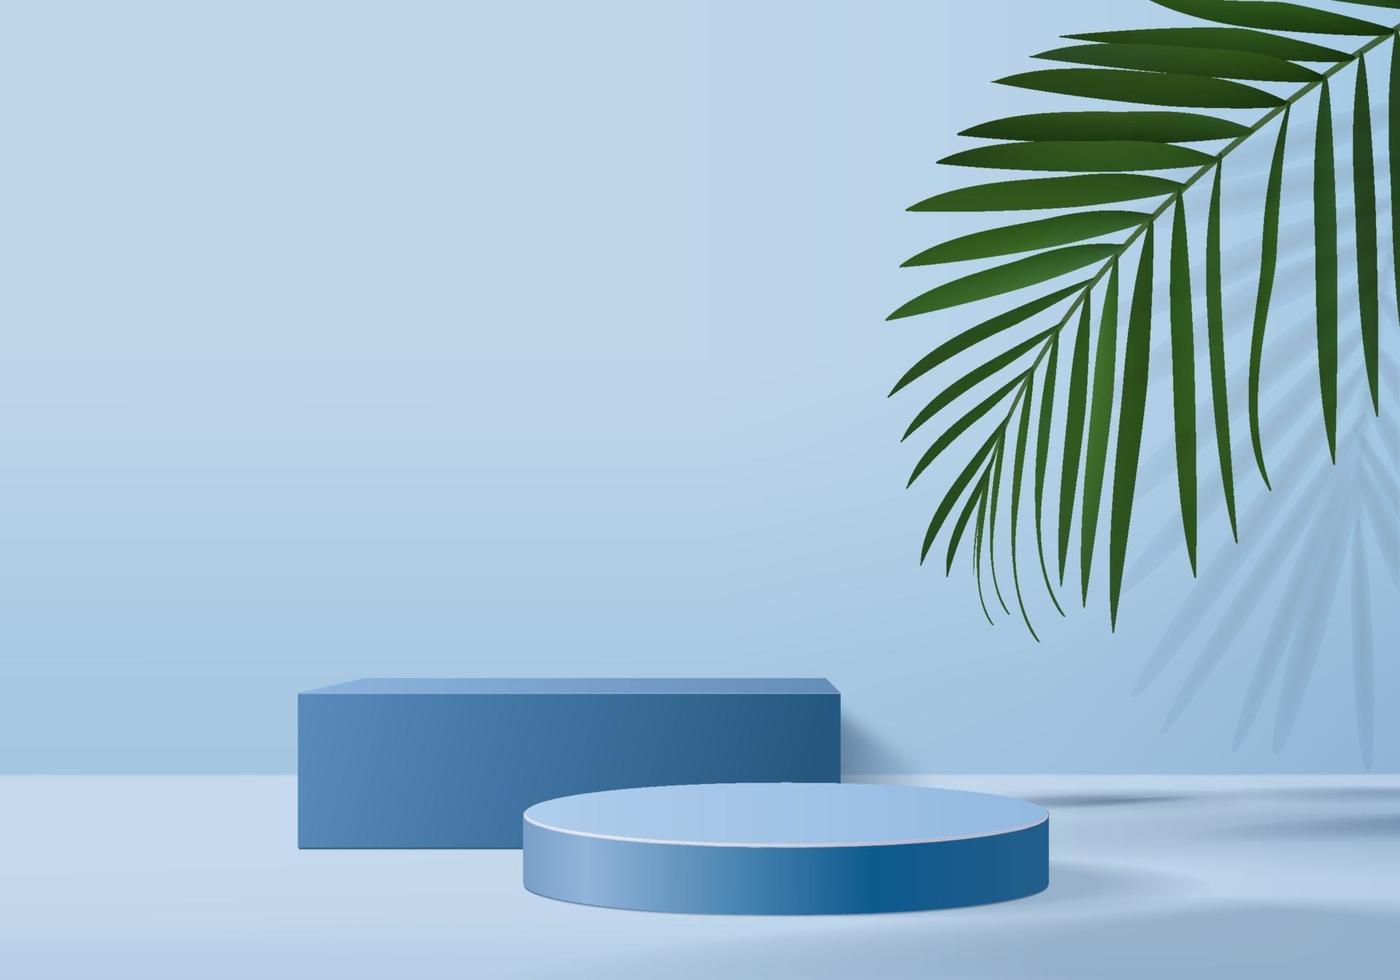 Les produits de fond 3D affichent la scène du podium avec la feuille verte fond de plate-forme géométrique vecteur de rendu 3d avec le support de podium pour montrer la vitrine de la scène des produits cosmétiques sur le piédestal studio bleu